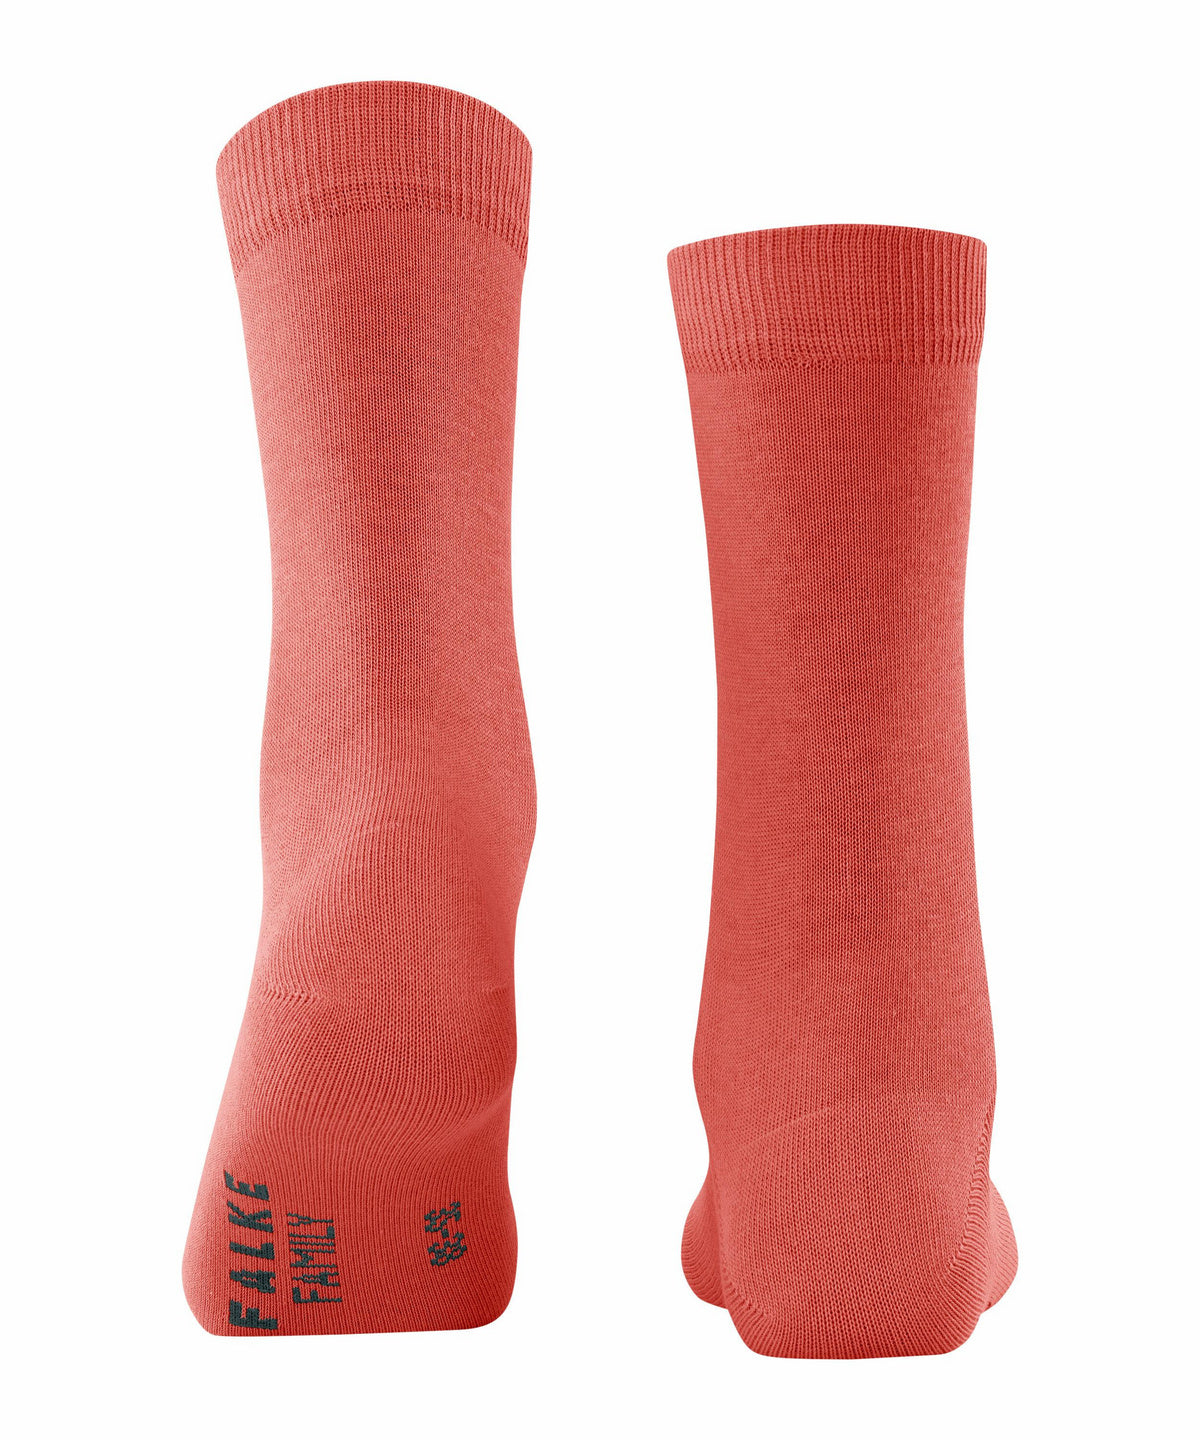 FALKE Family Women's Socks - Orange